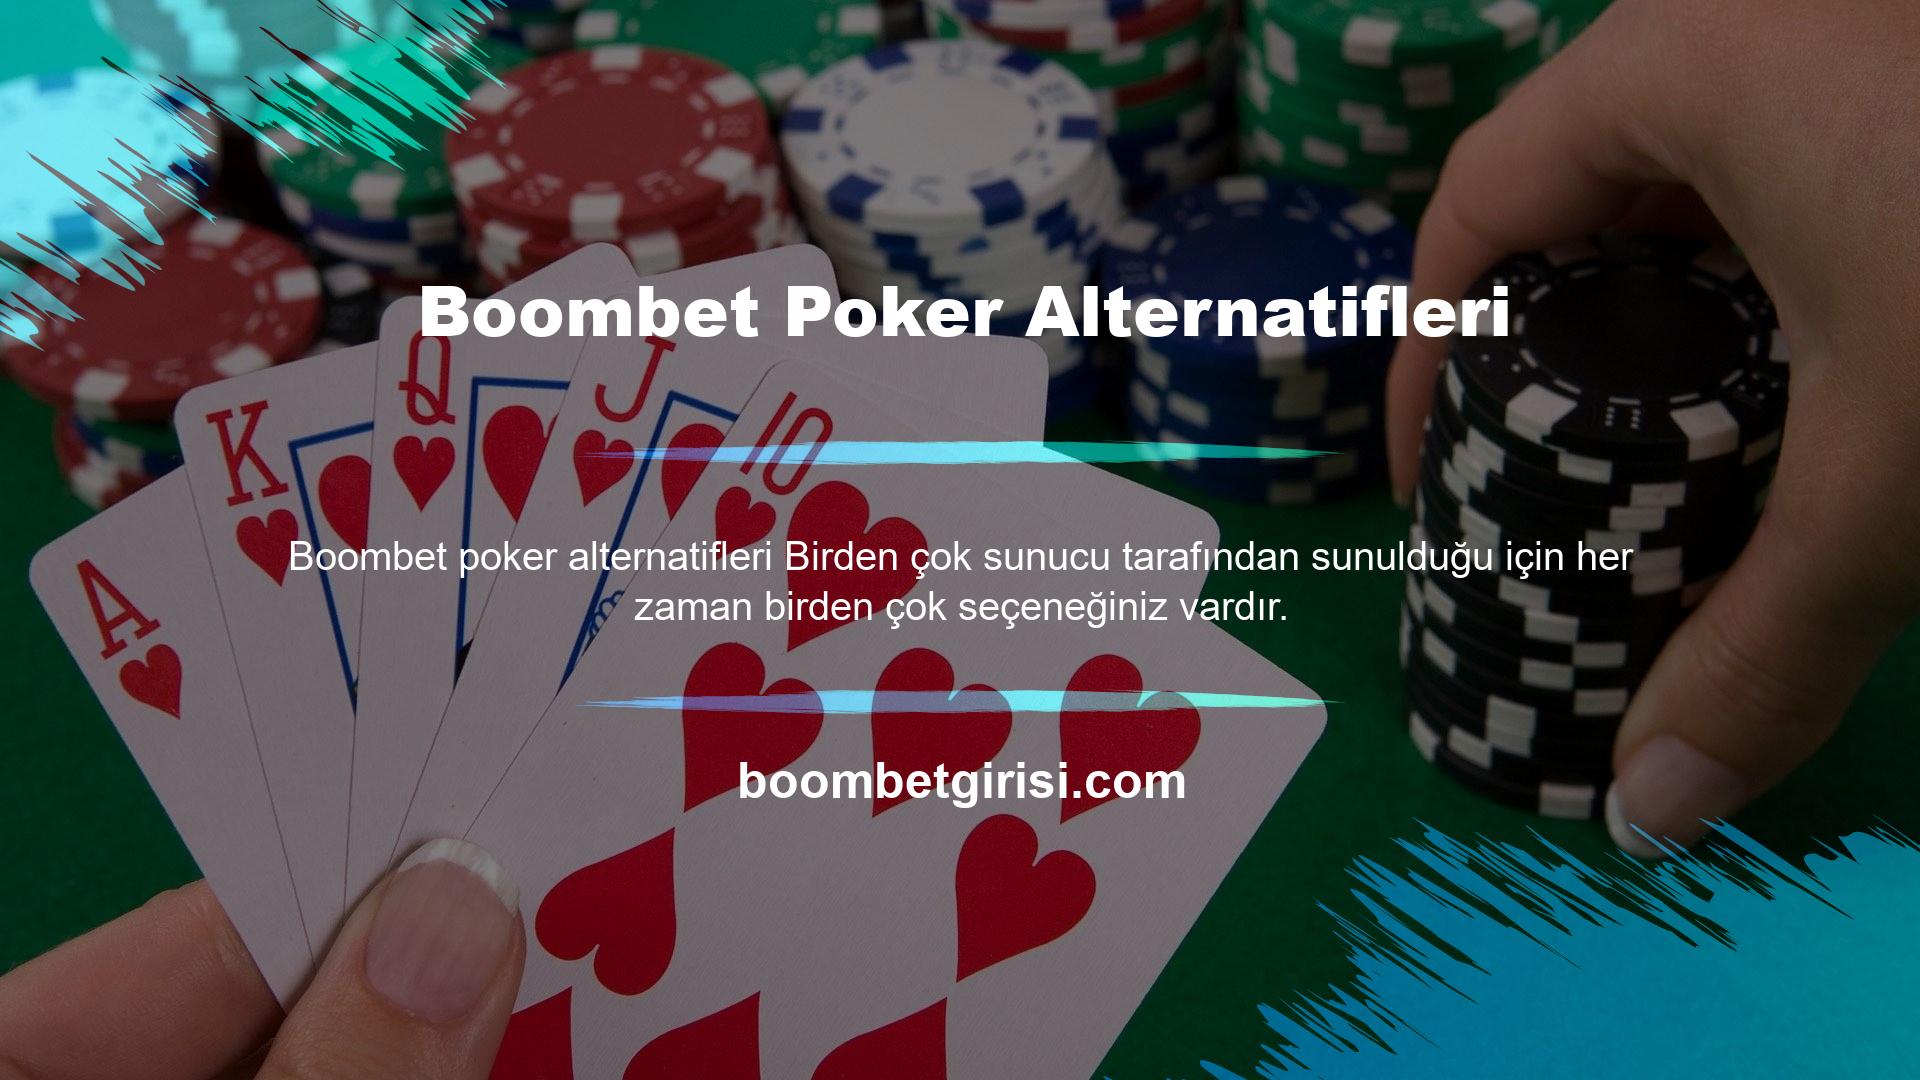 Boombet poker masalarında oturmak istemeyen, deneyim kazanmak ve gelirlerini artırmak isteyen üyelere yönelik bir hizmet de bilgisayara karşı pokerdir